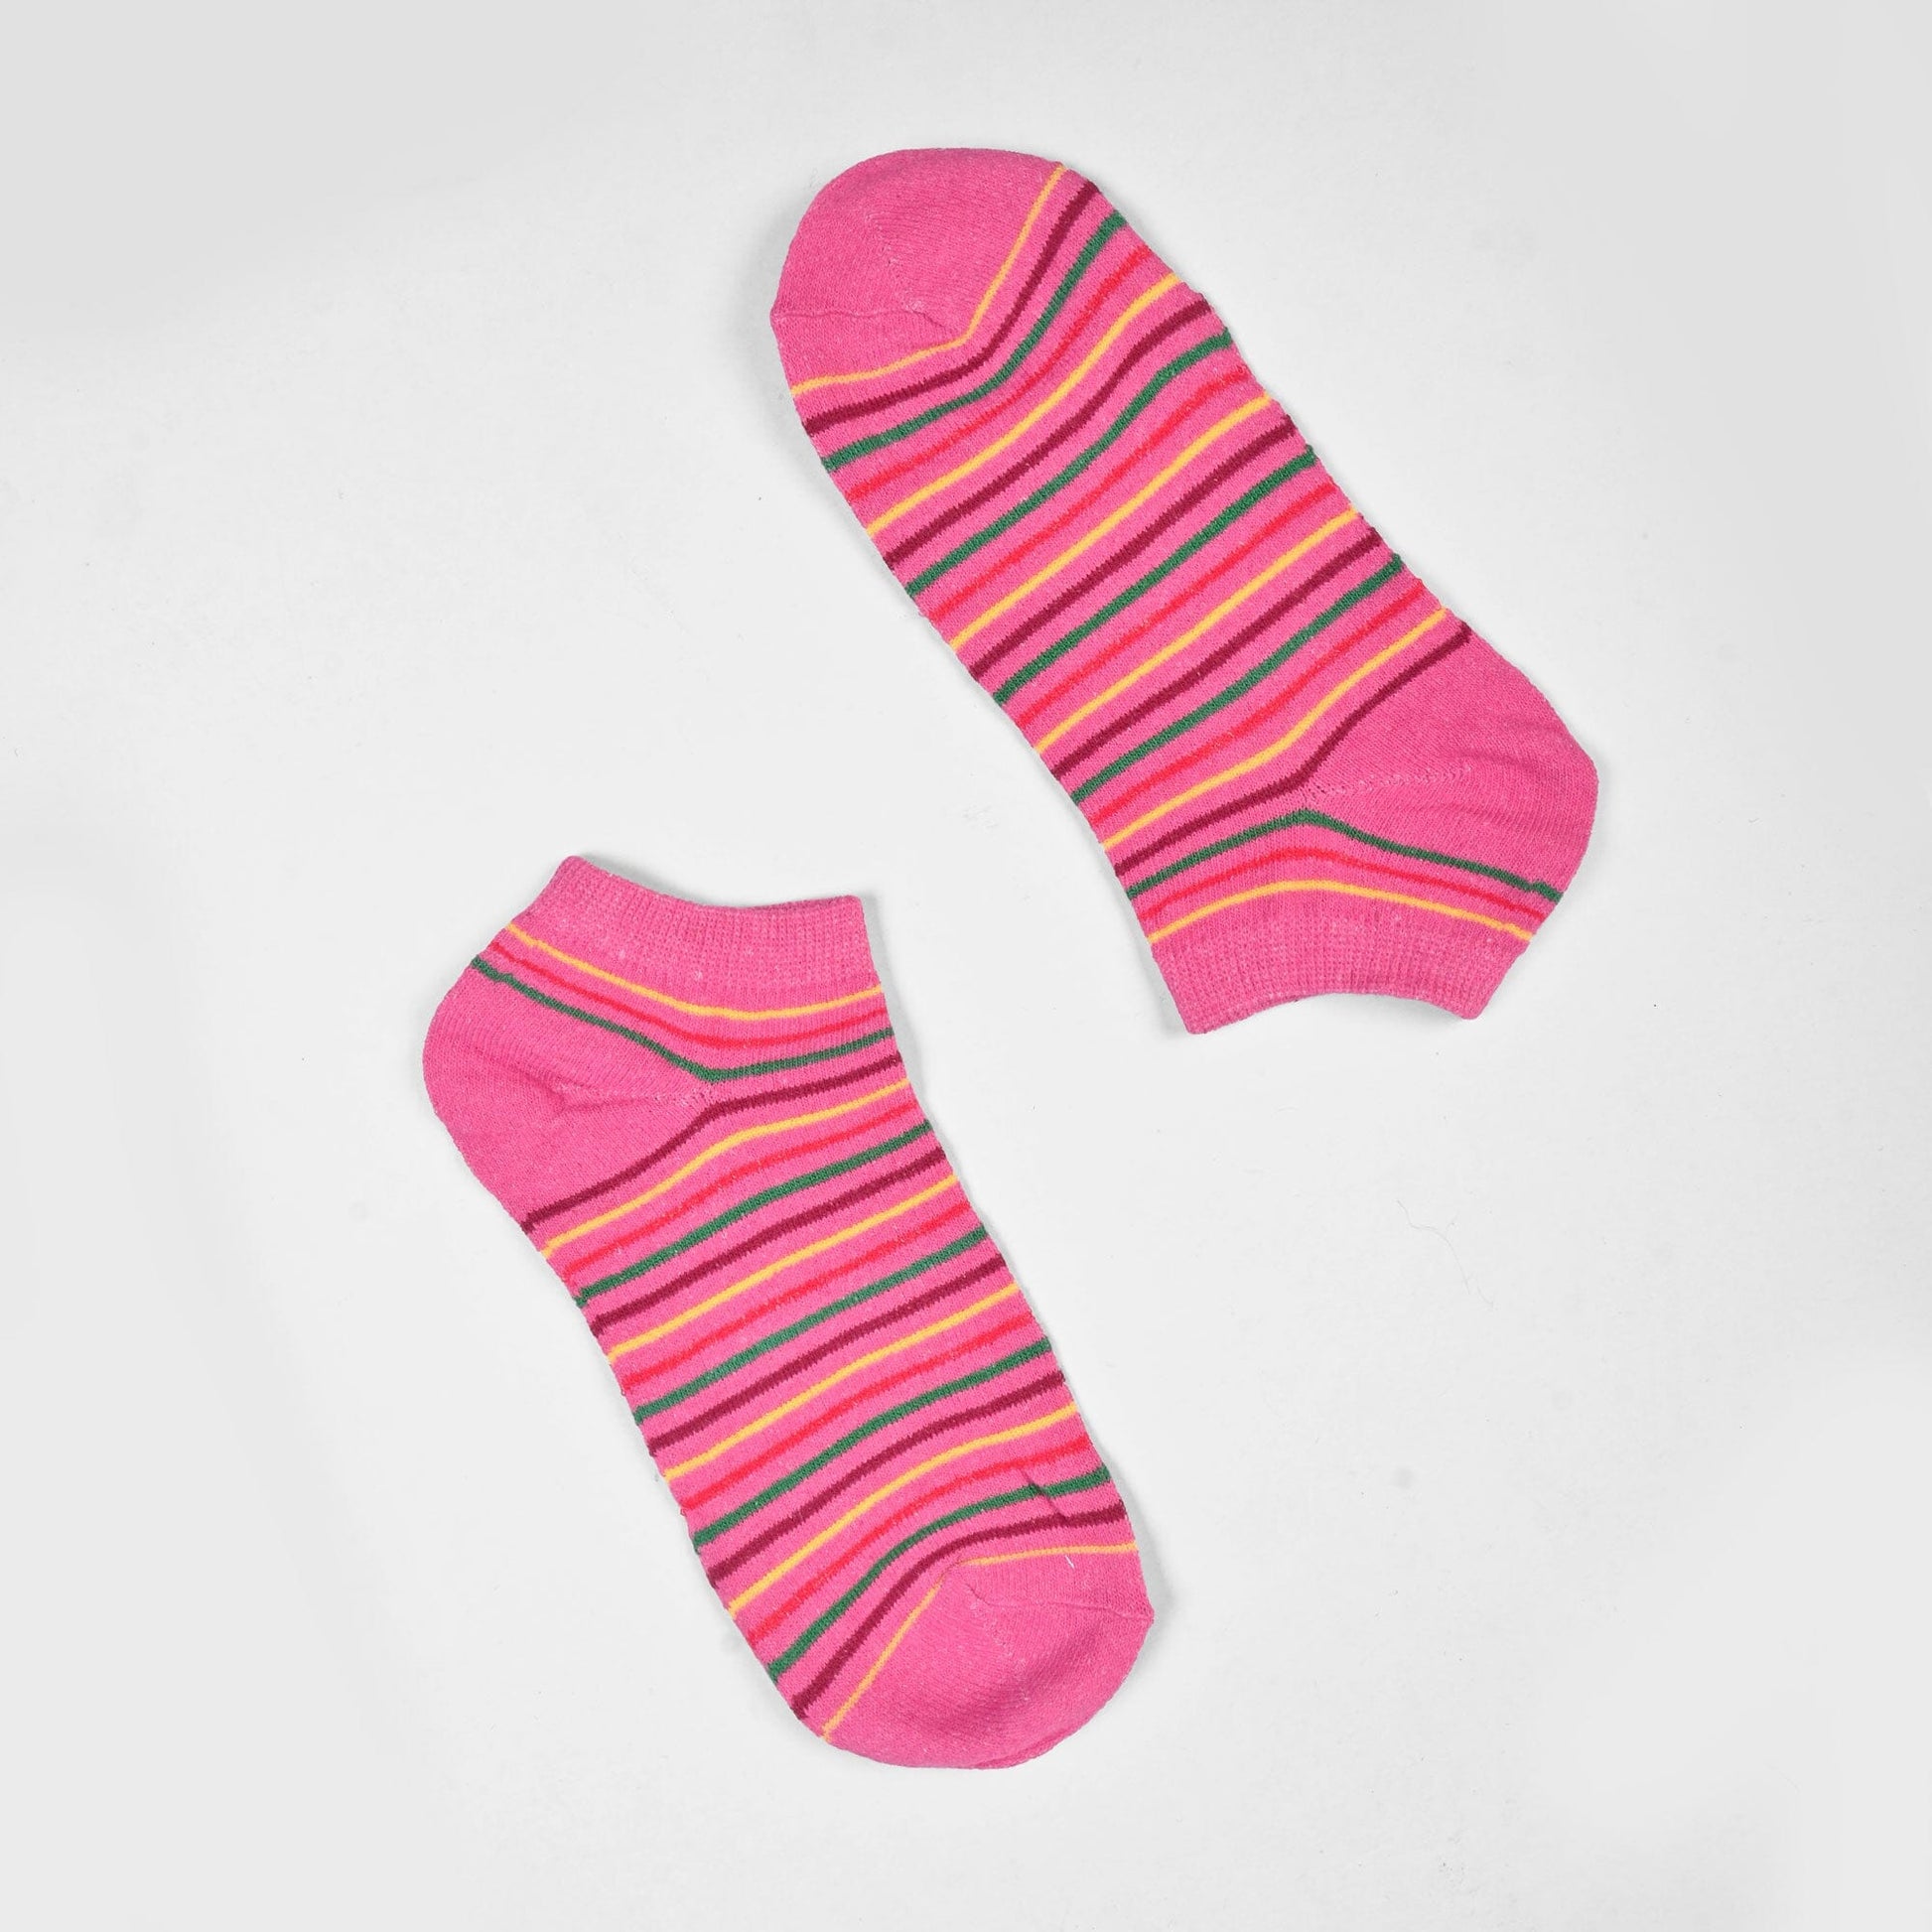 Rauma Women's Classic Anklet Socks Socks SRL Pink D2 EUR 35-40